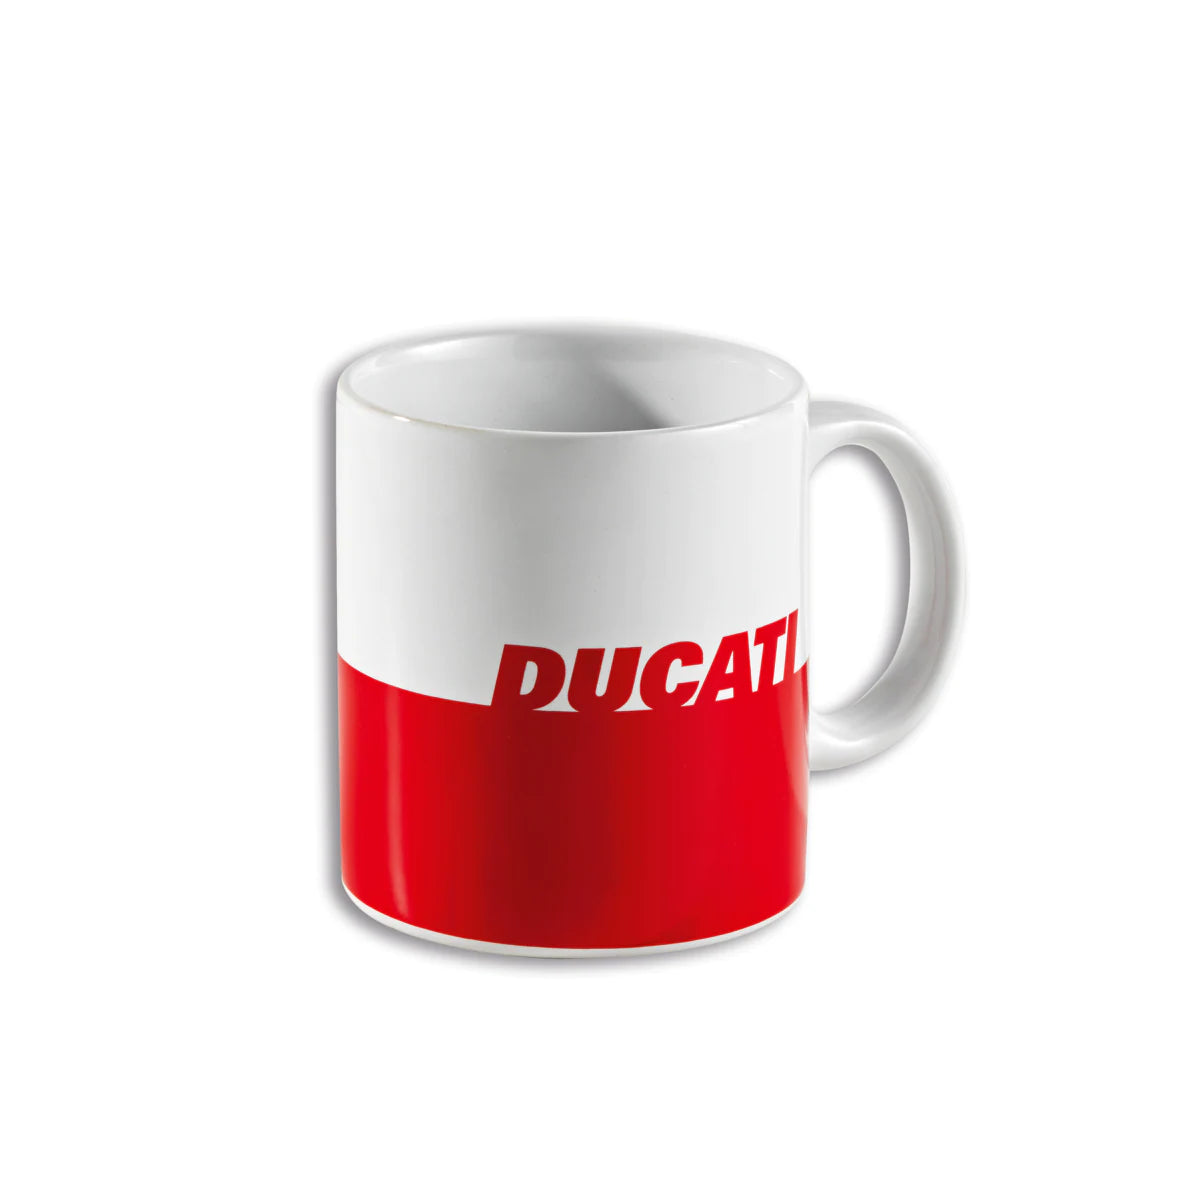 Ducait Mug red/white 987703962